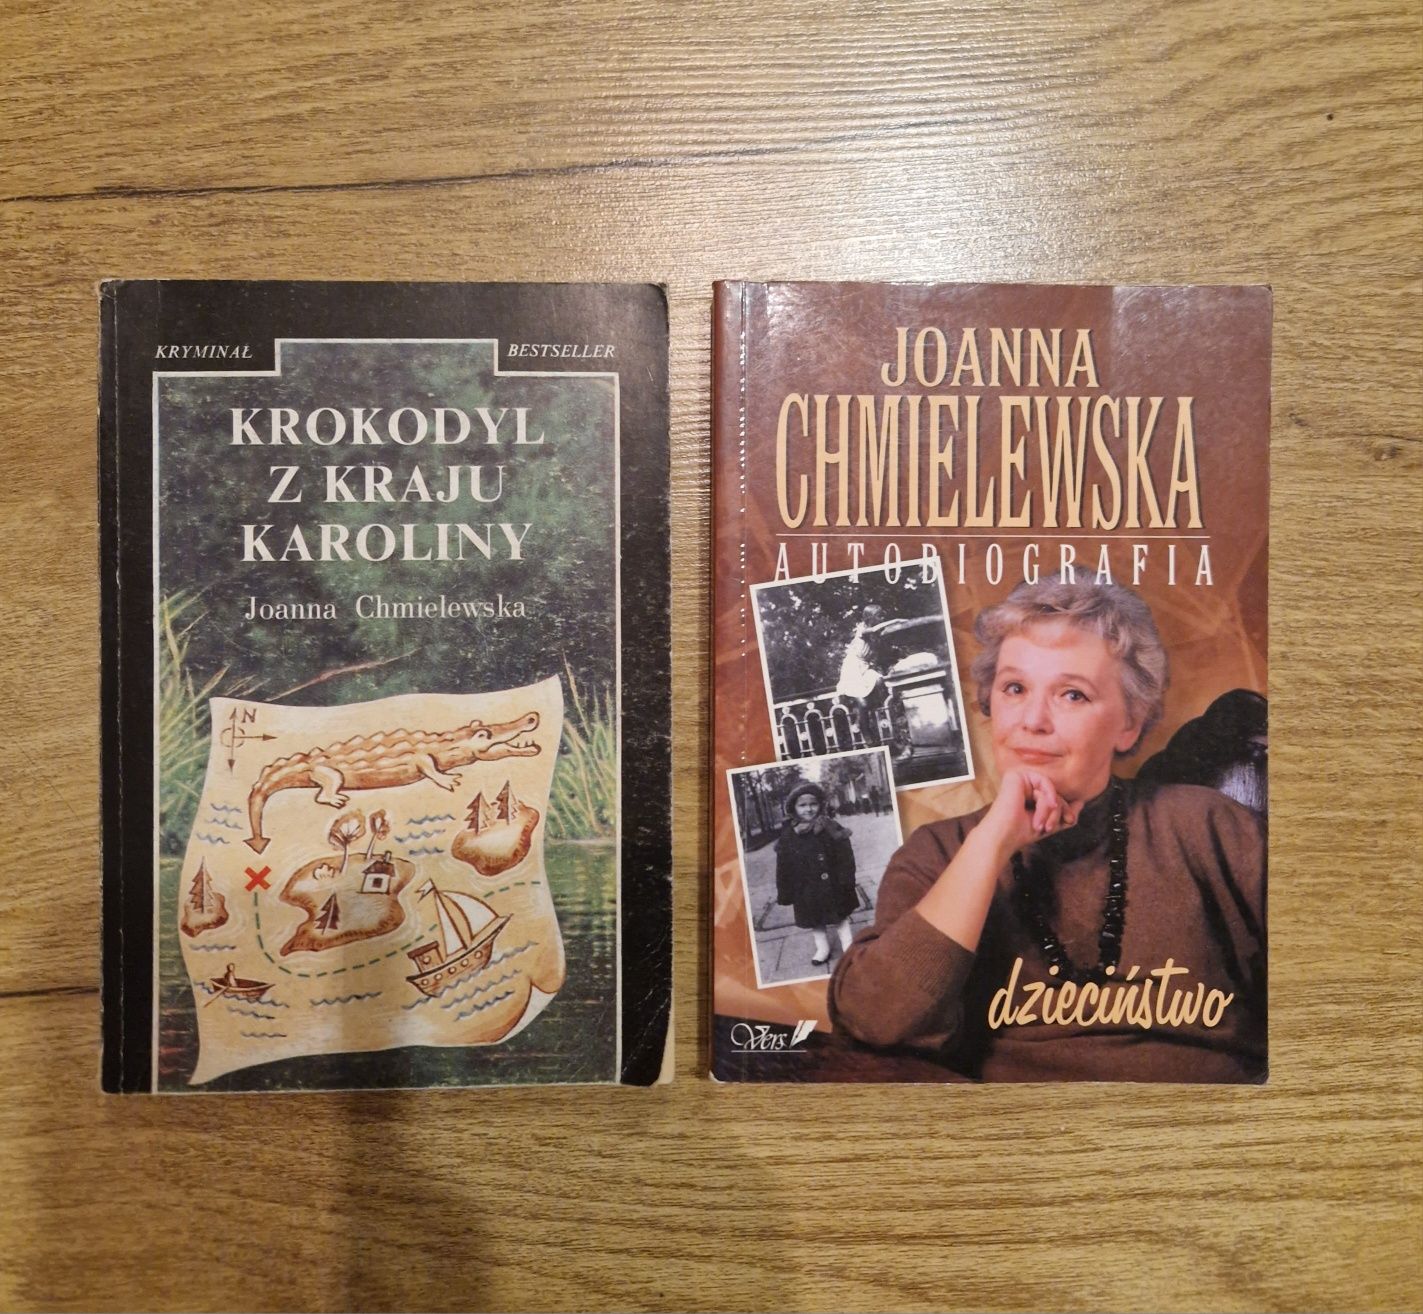 Joanna Chmielewska autobiografia dzieciństwo,Krokodyl z kraju Karoliny